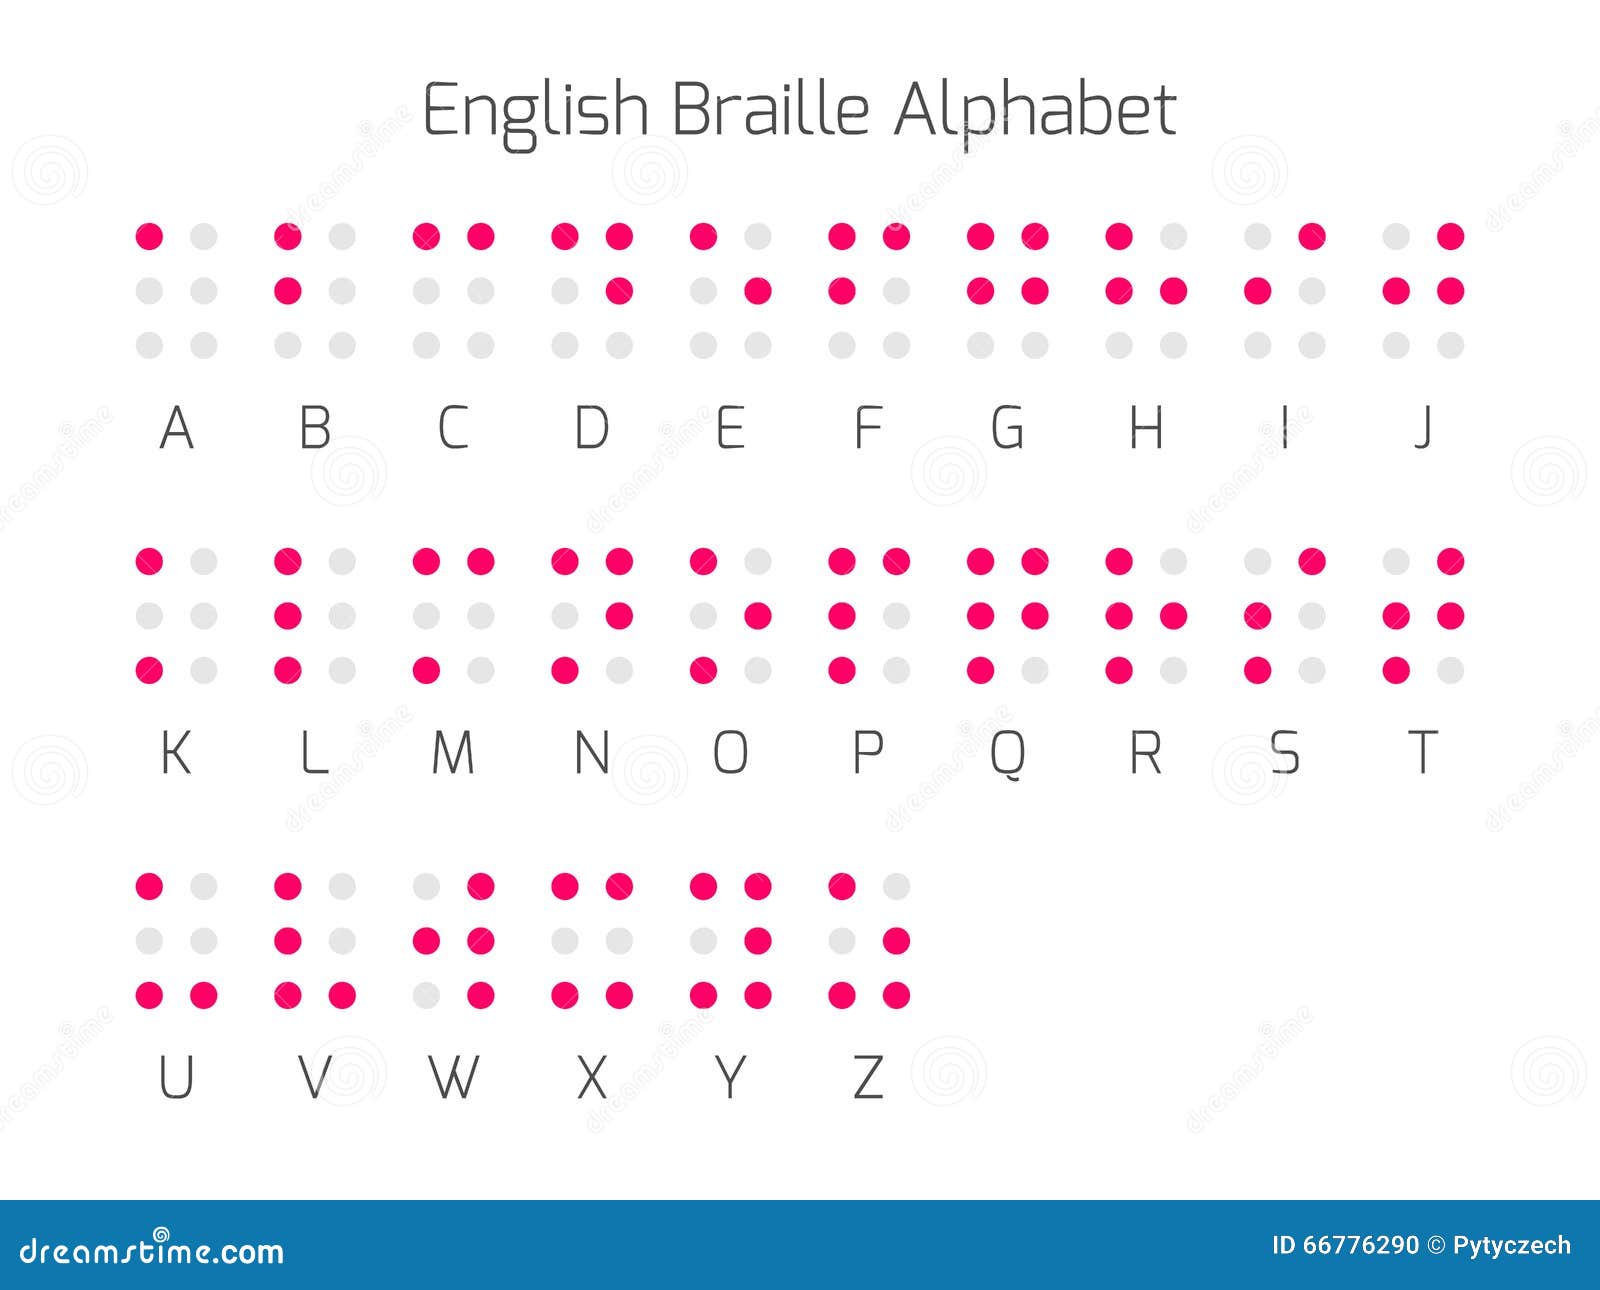 Understanding Braille